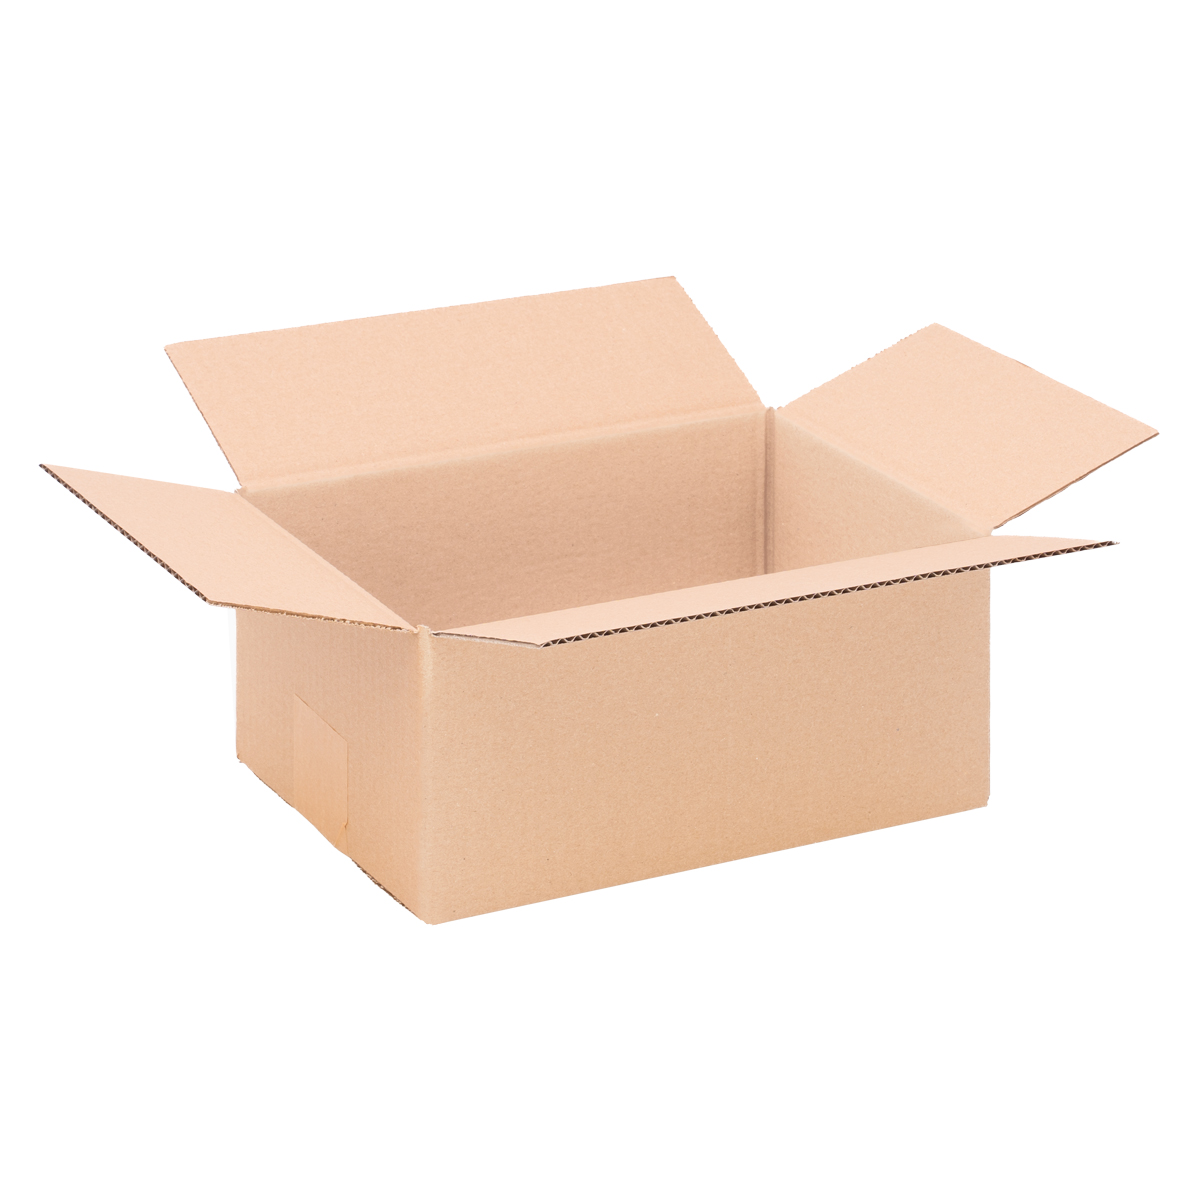 Cardboard box, single wall, 260x170x120 mm - KK 27